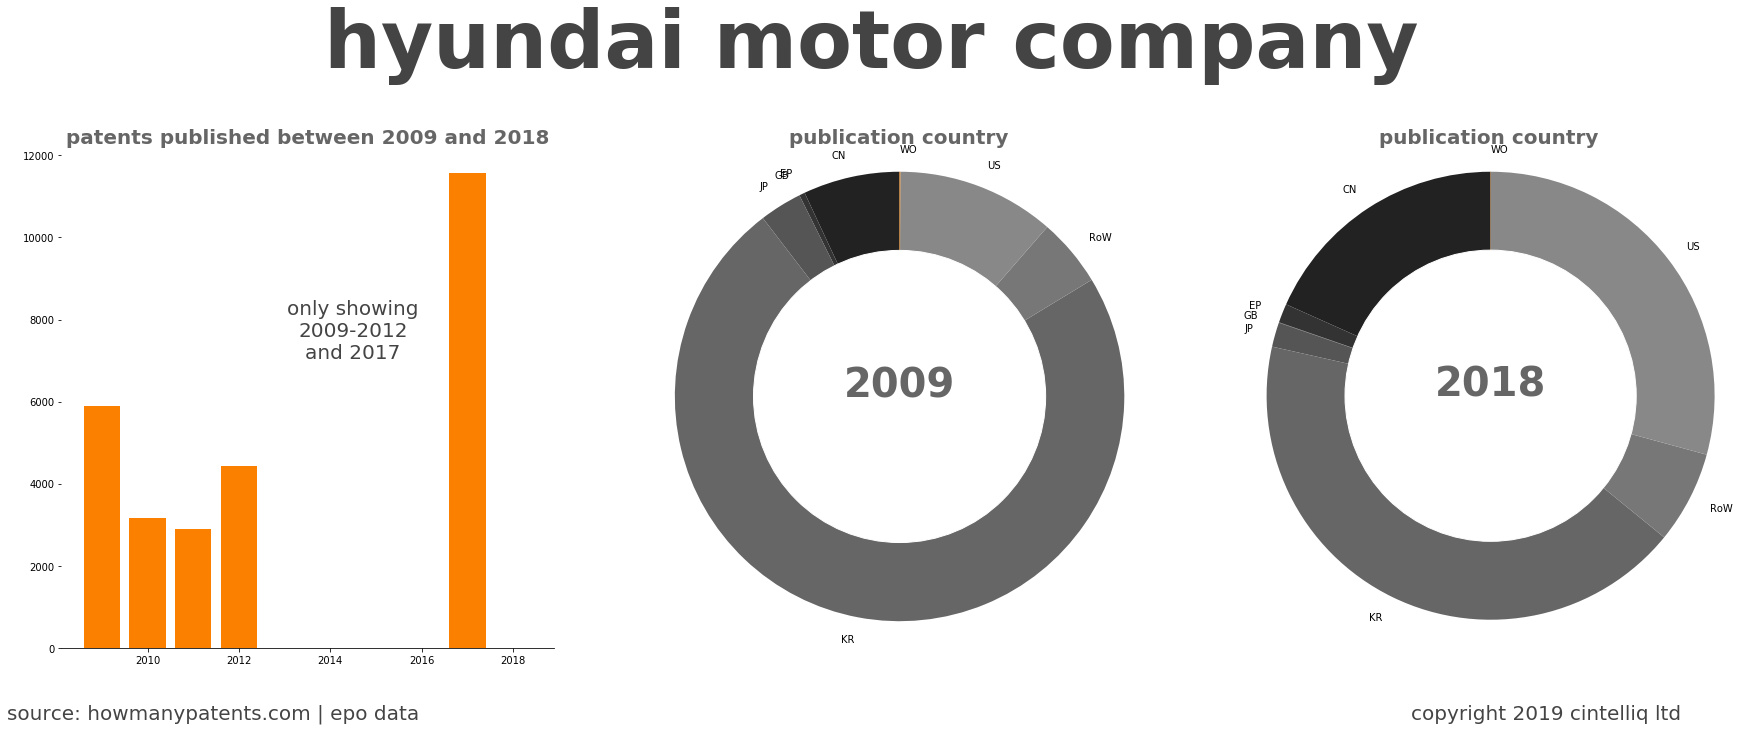 summary of patents for Hyundai Motor Company